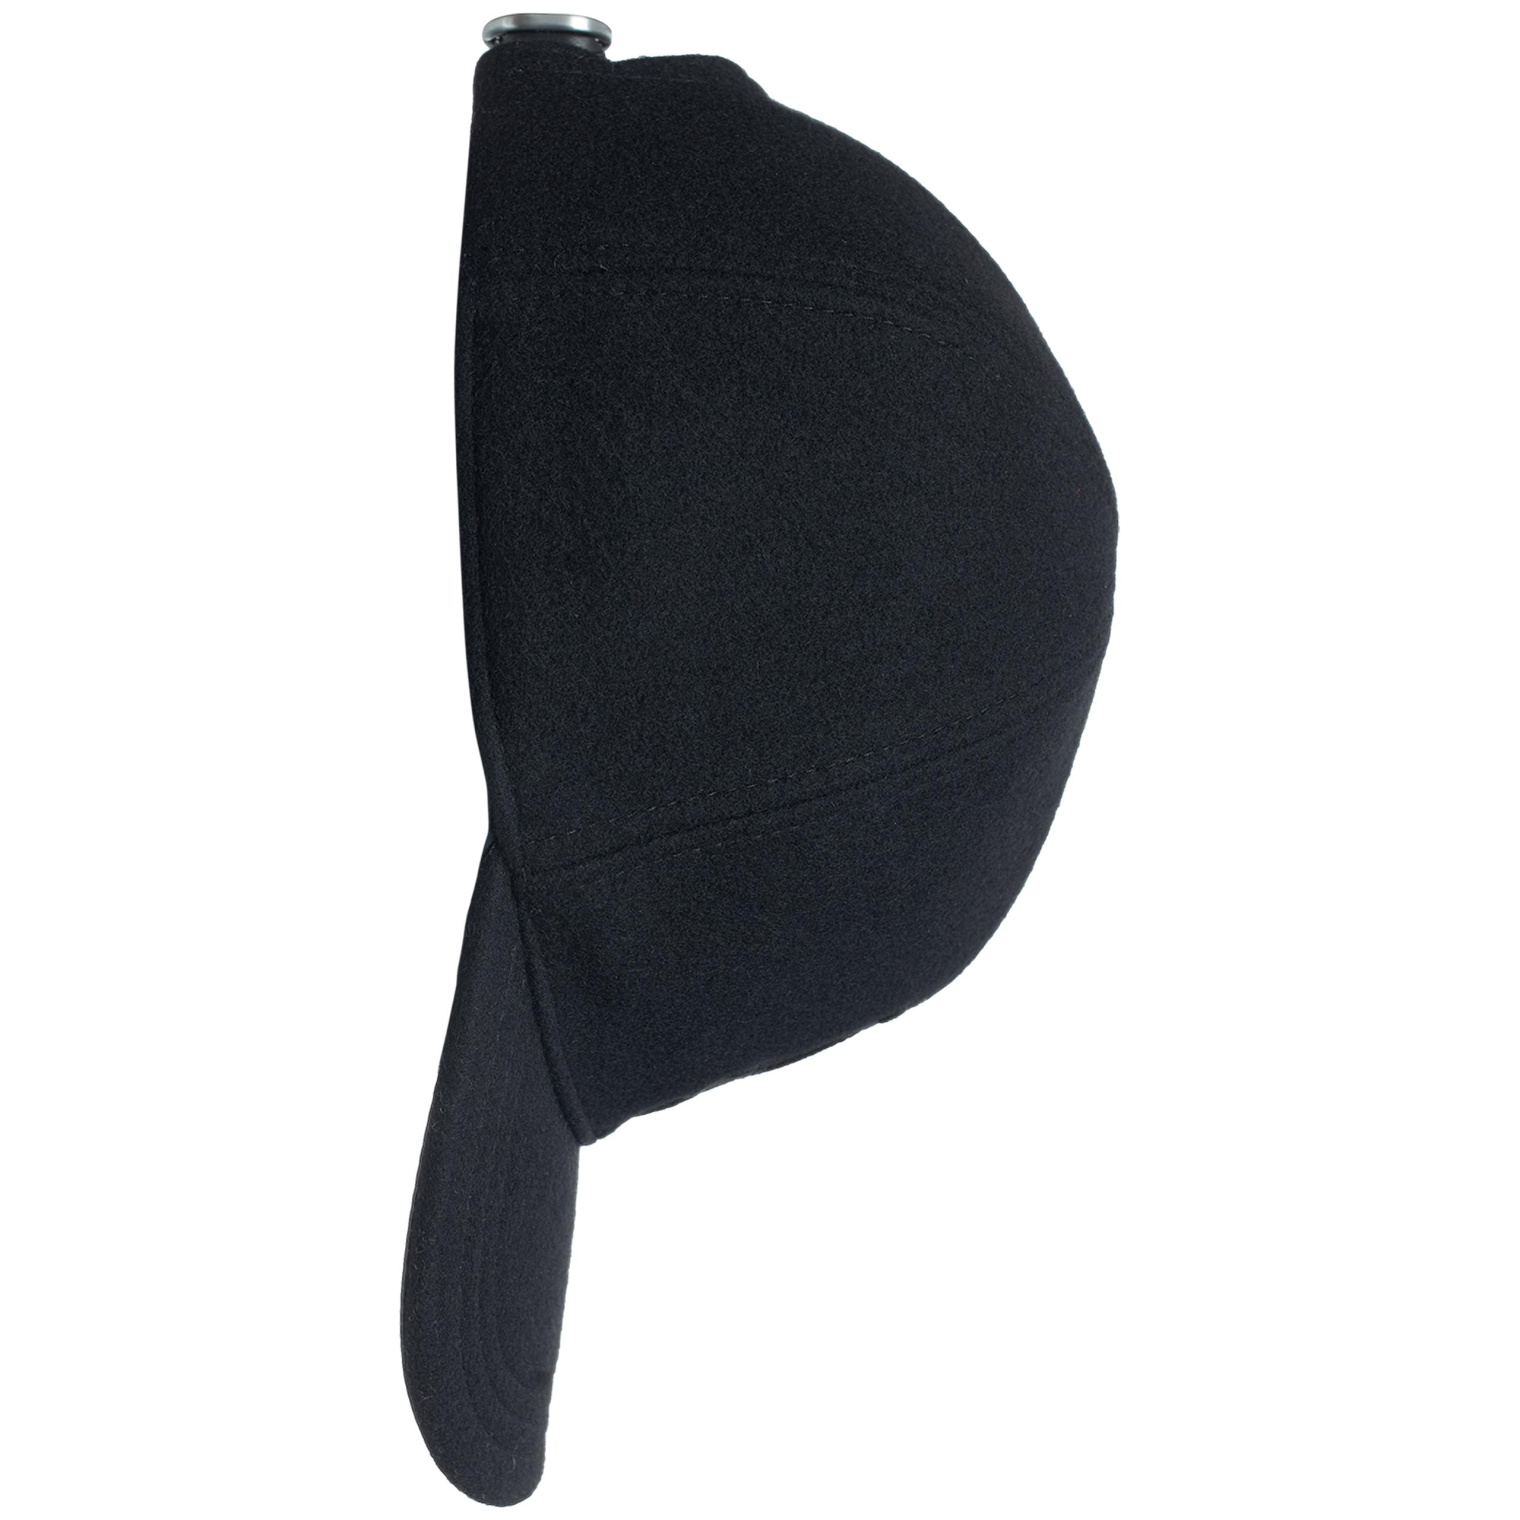 Jil Sander Черная кепка из шерсти с логотипом